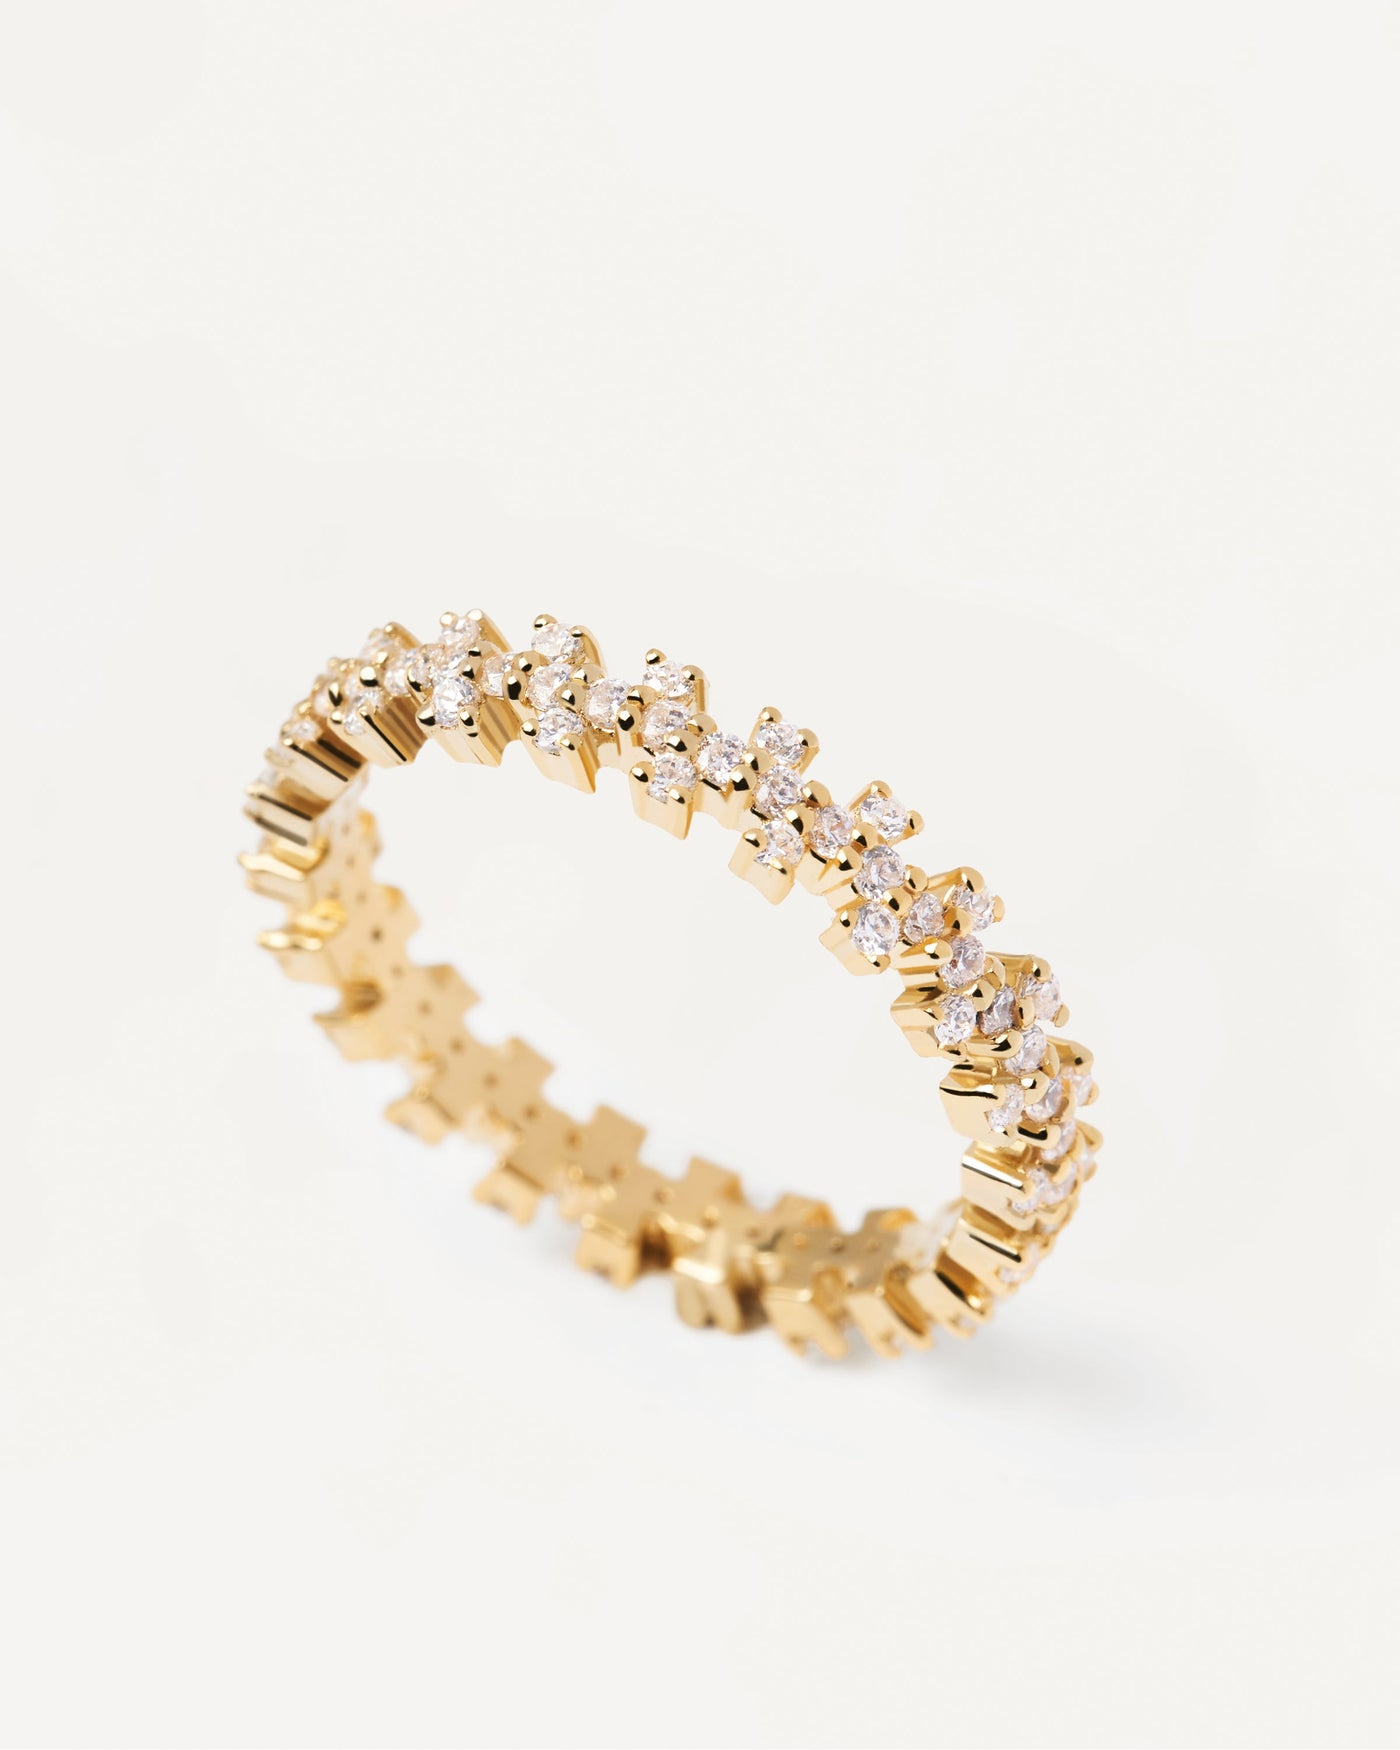 Crown Ring. Eternity Crown Ring aus vergoldetem Silber mit weißen Zirkonias. Erhalten Sie die neuesten Produkte von PDPAOLA. Geben Sie Ihre Bestellung sicher auf und erhalten Sie diesen Bestseller.